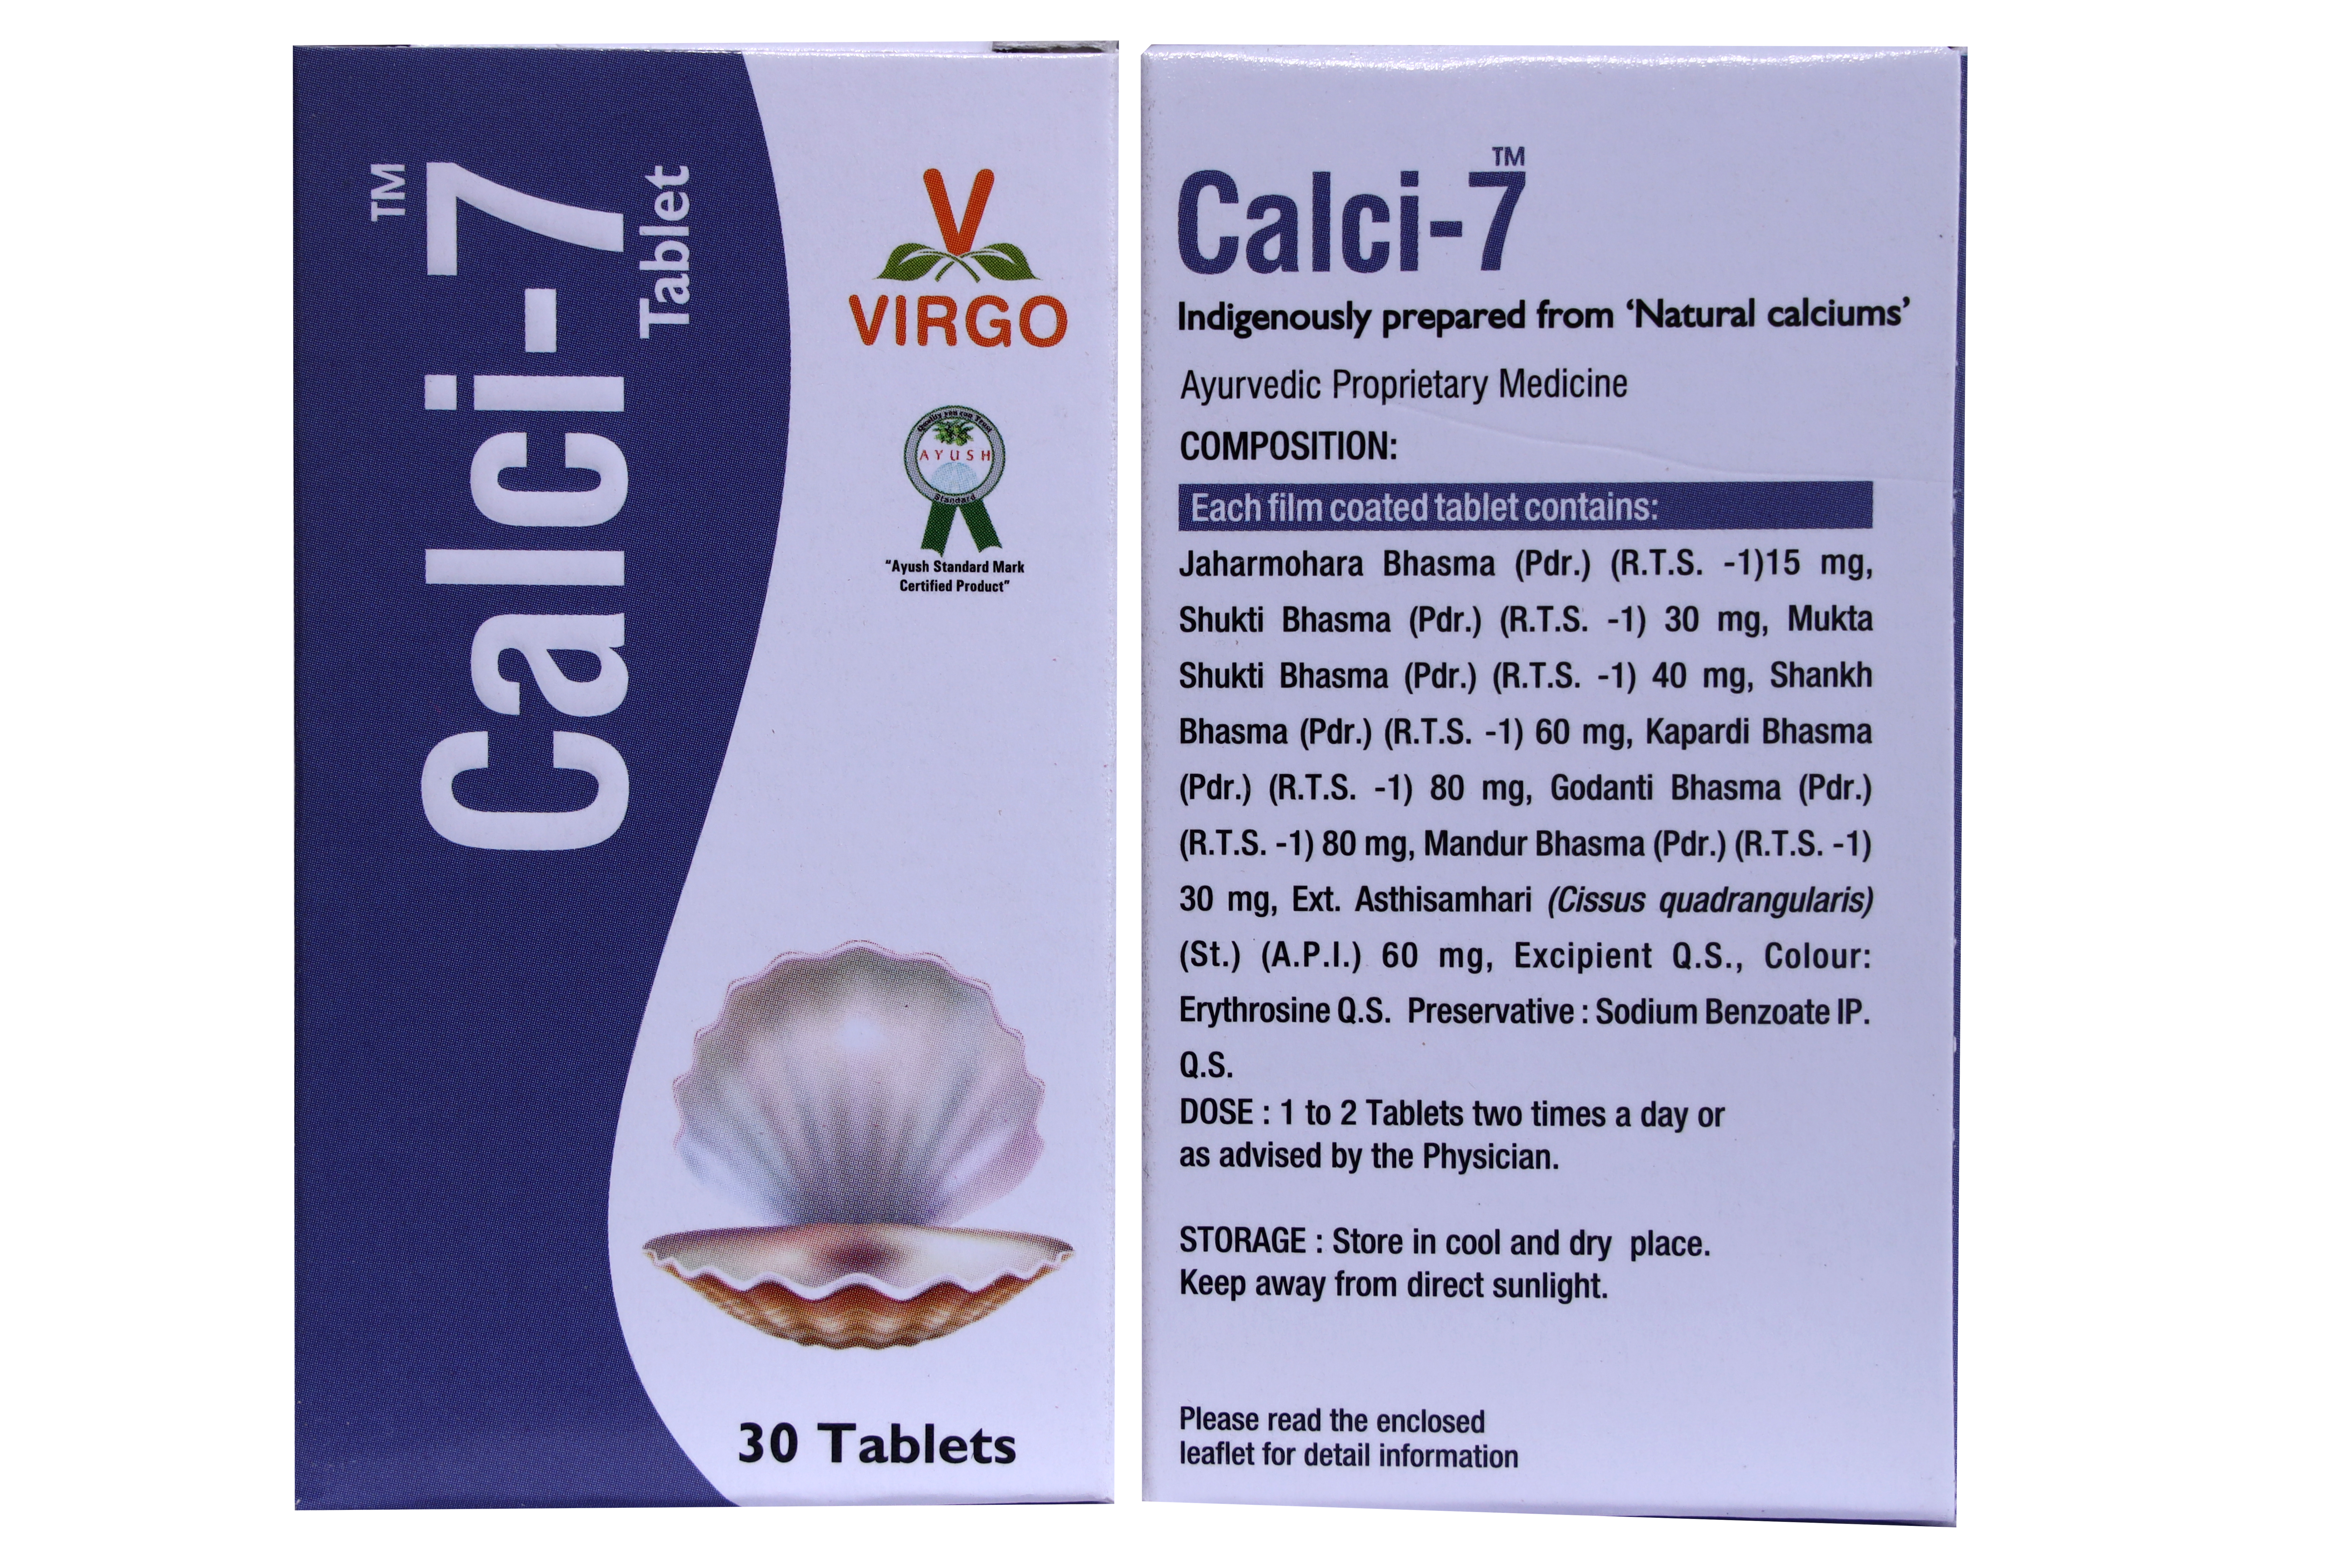 Buy Virgo Calci-7 Tablet at Best Price Online